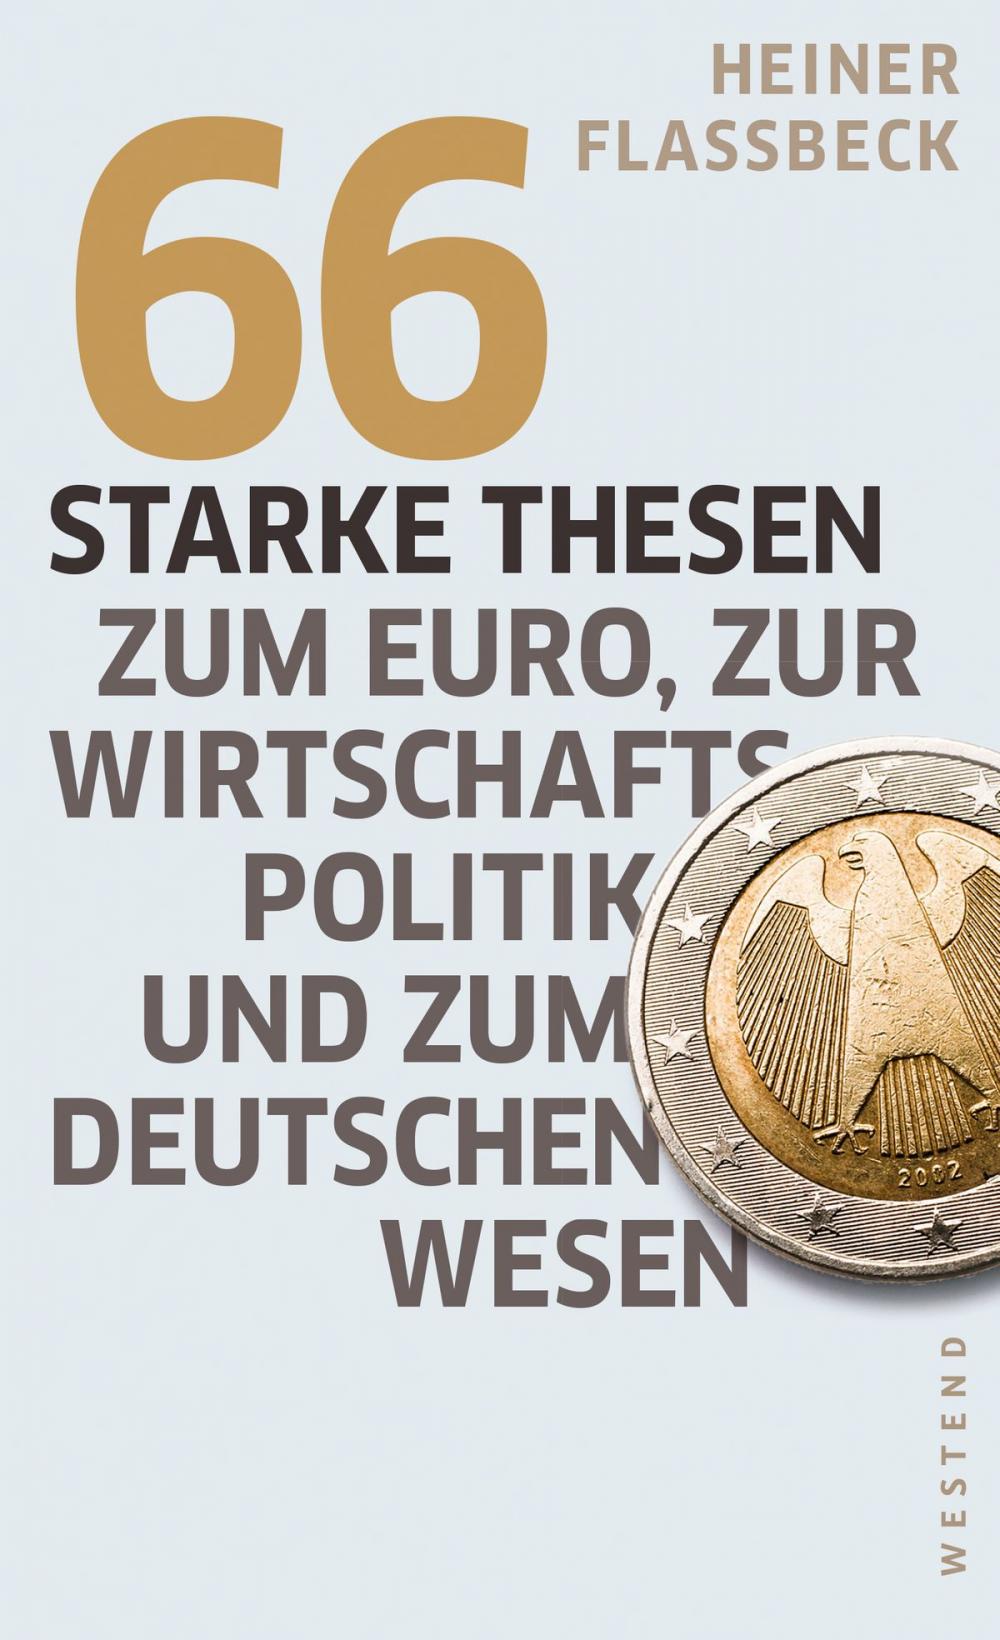 Big bigCover of 66 starke Thesen zum Euro, zur Wirtschaftspolitik und zum deutschen Wesen